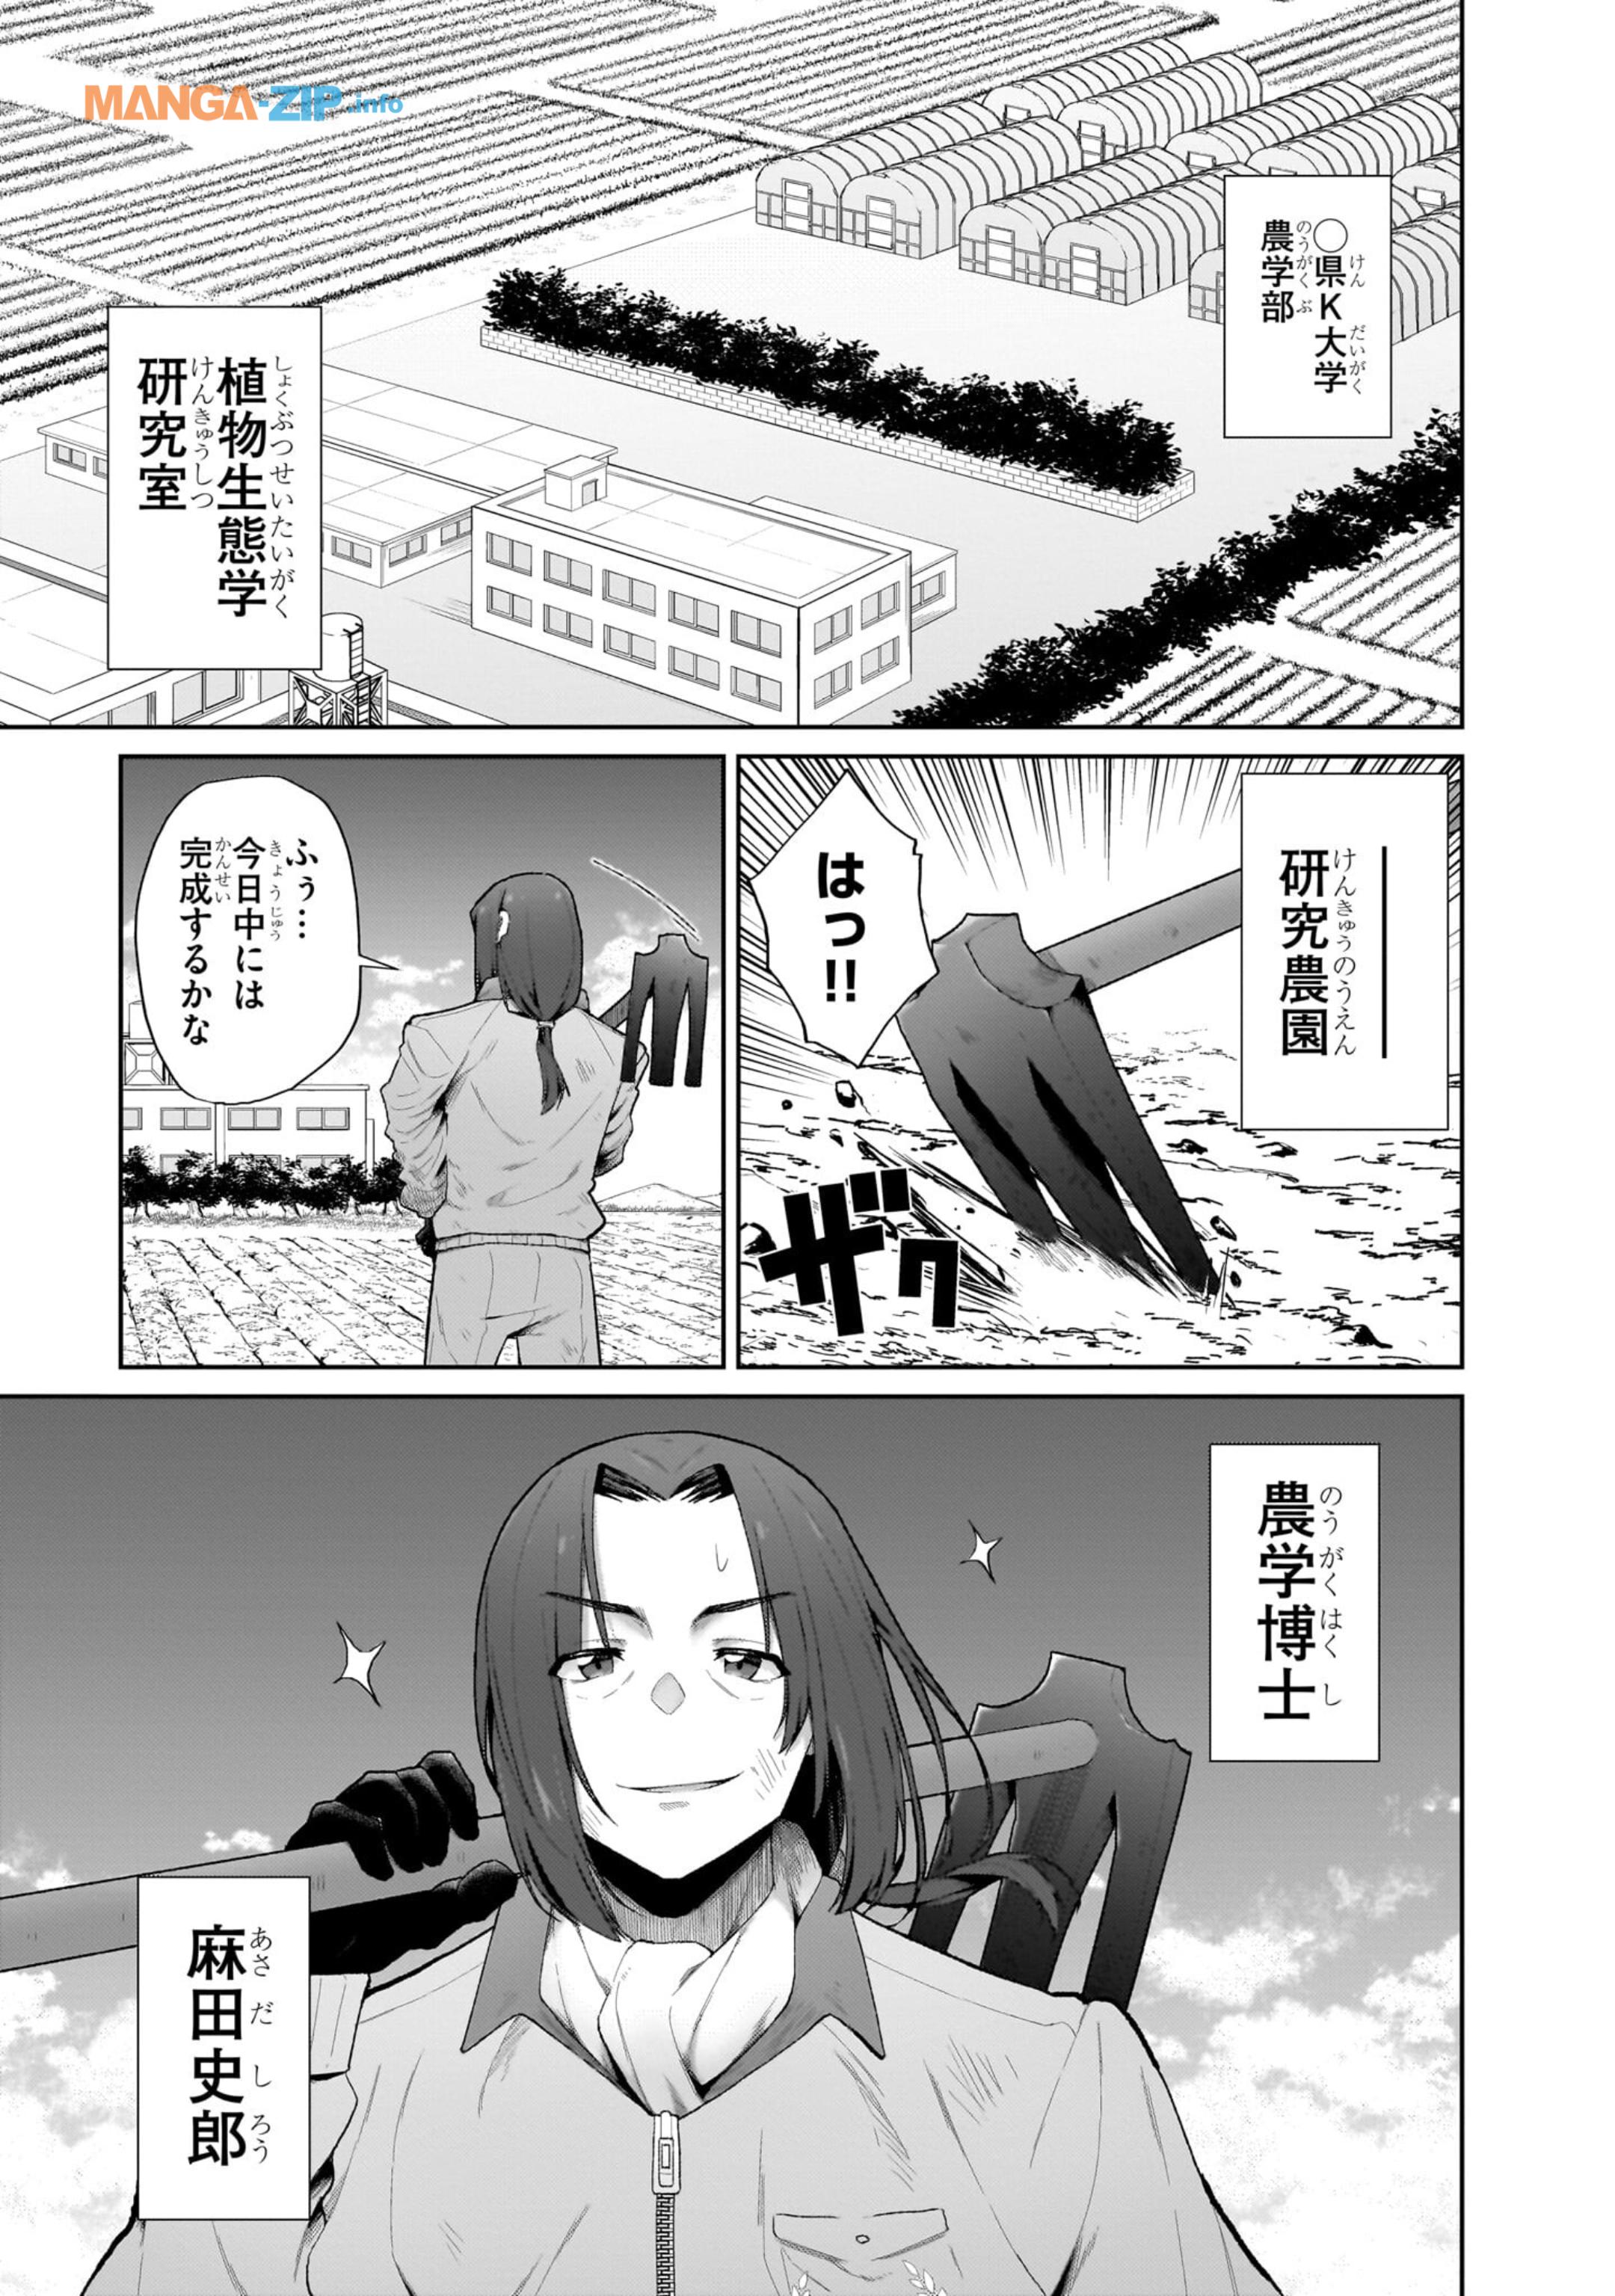 Nogaku Hakase no Isekai Muso Kinki no Chishiki de Kizuku Monster Musume Harem - Chapter 1 - Page 1